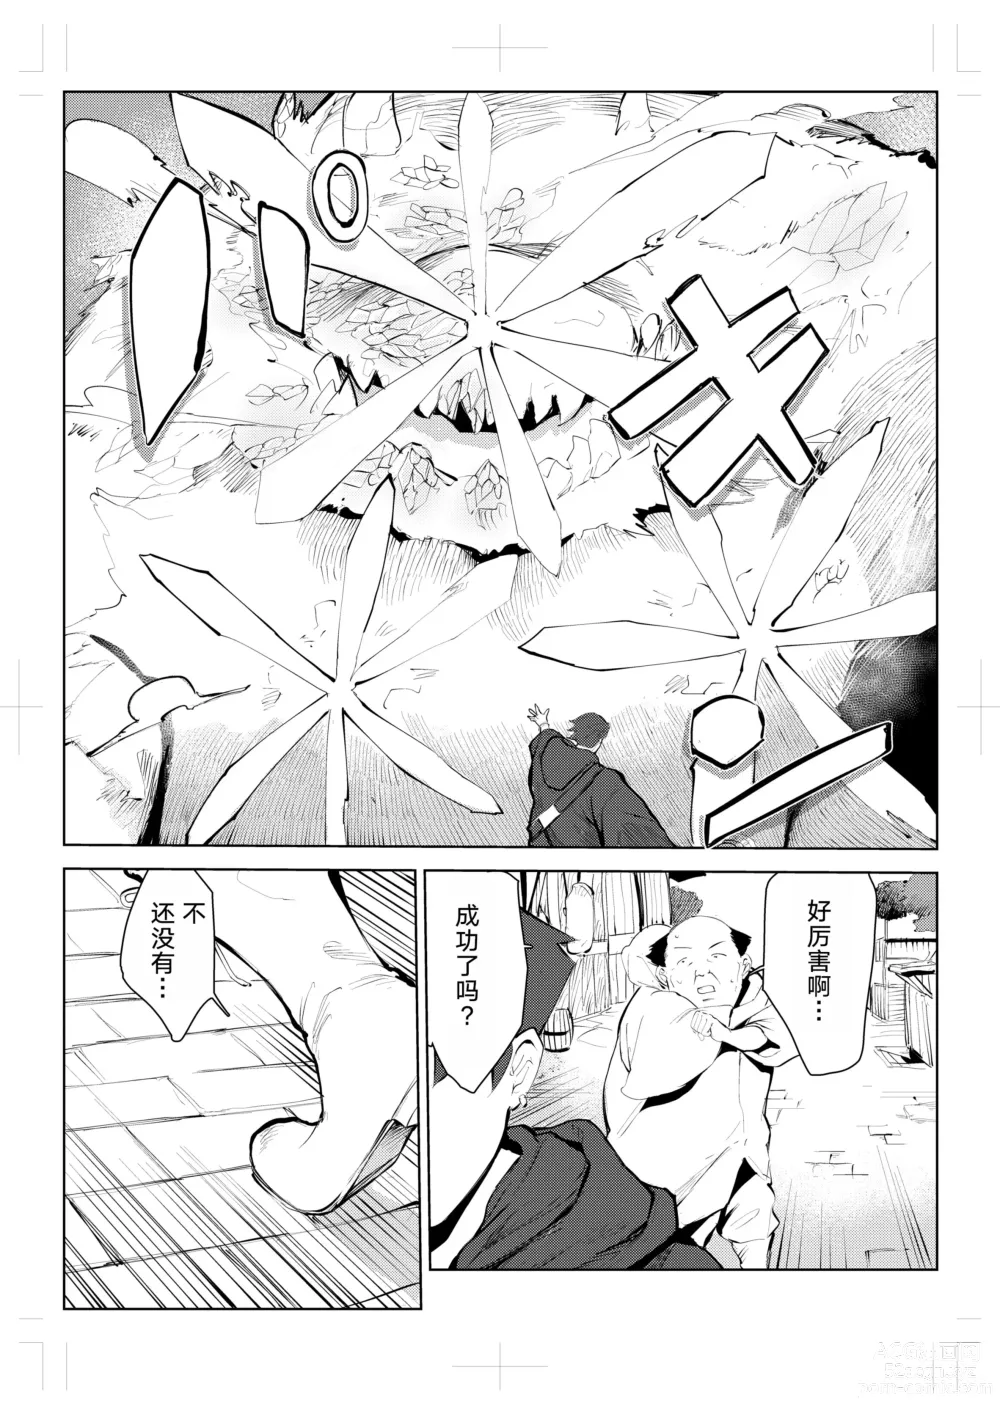 Page 6 of doujinshi 40-sai no Mahoutsukai 0